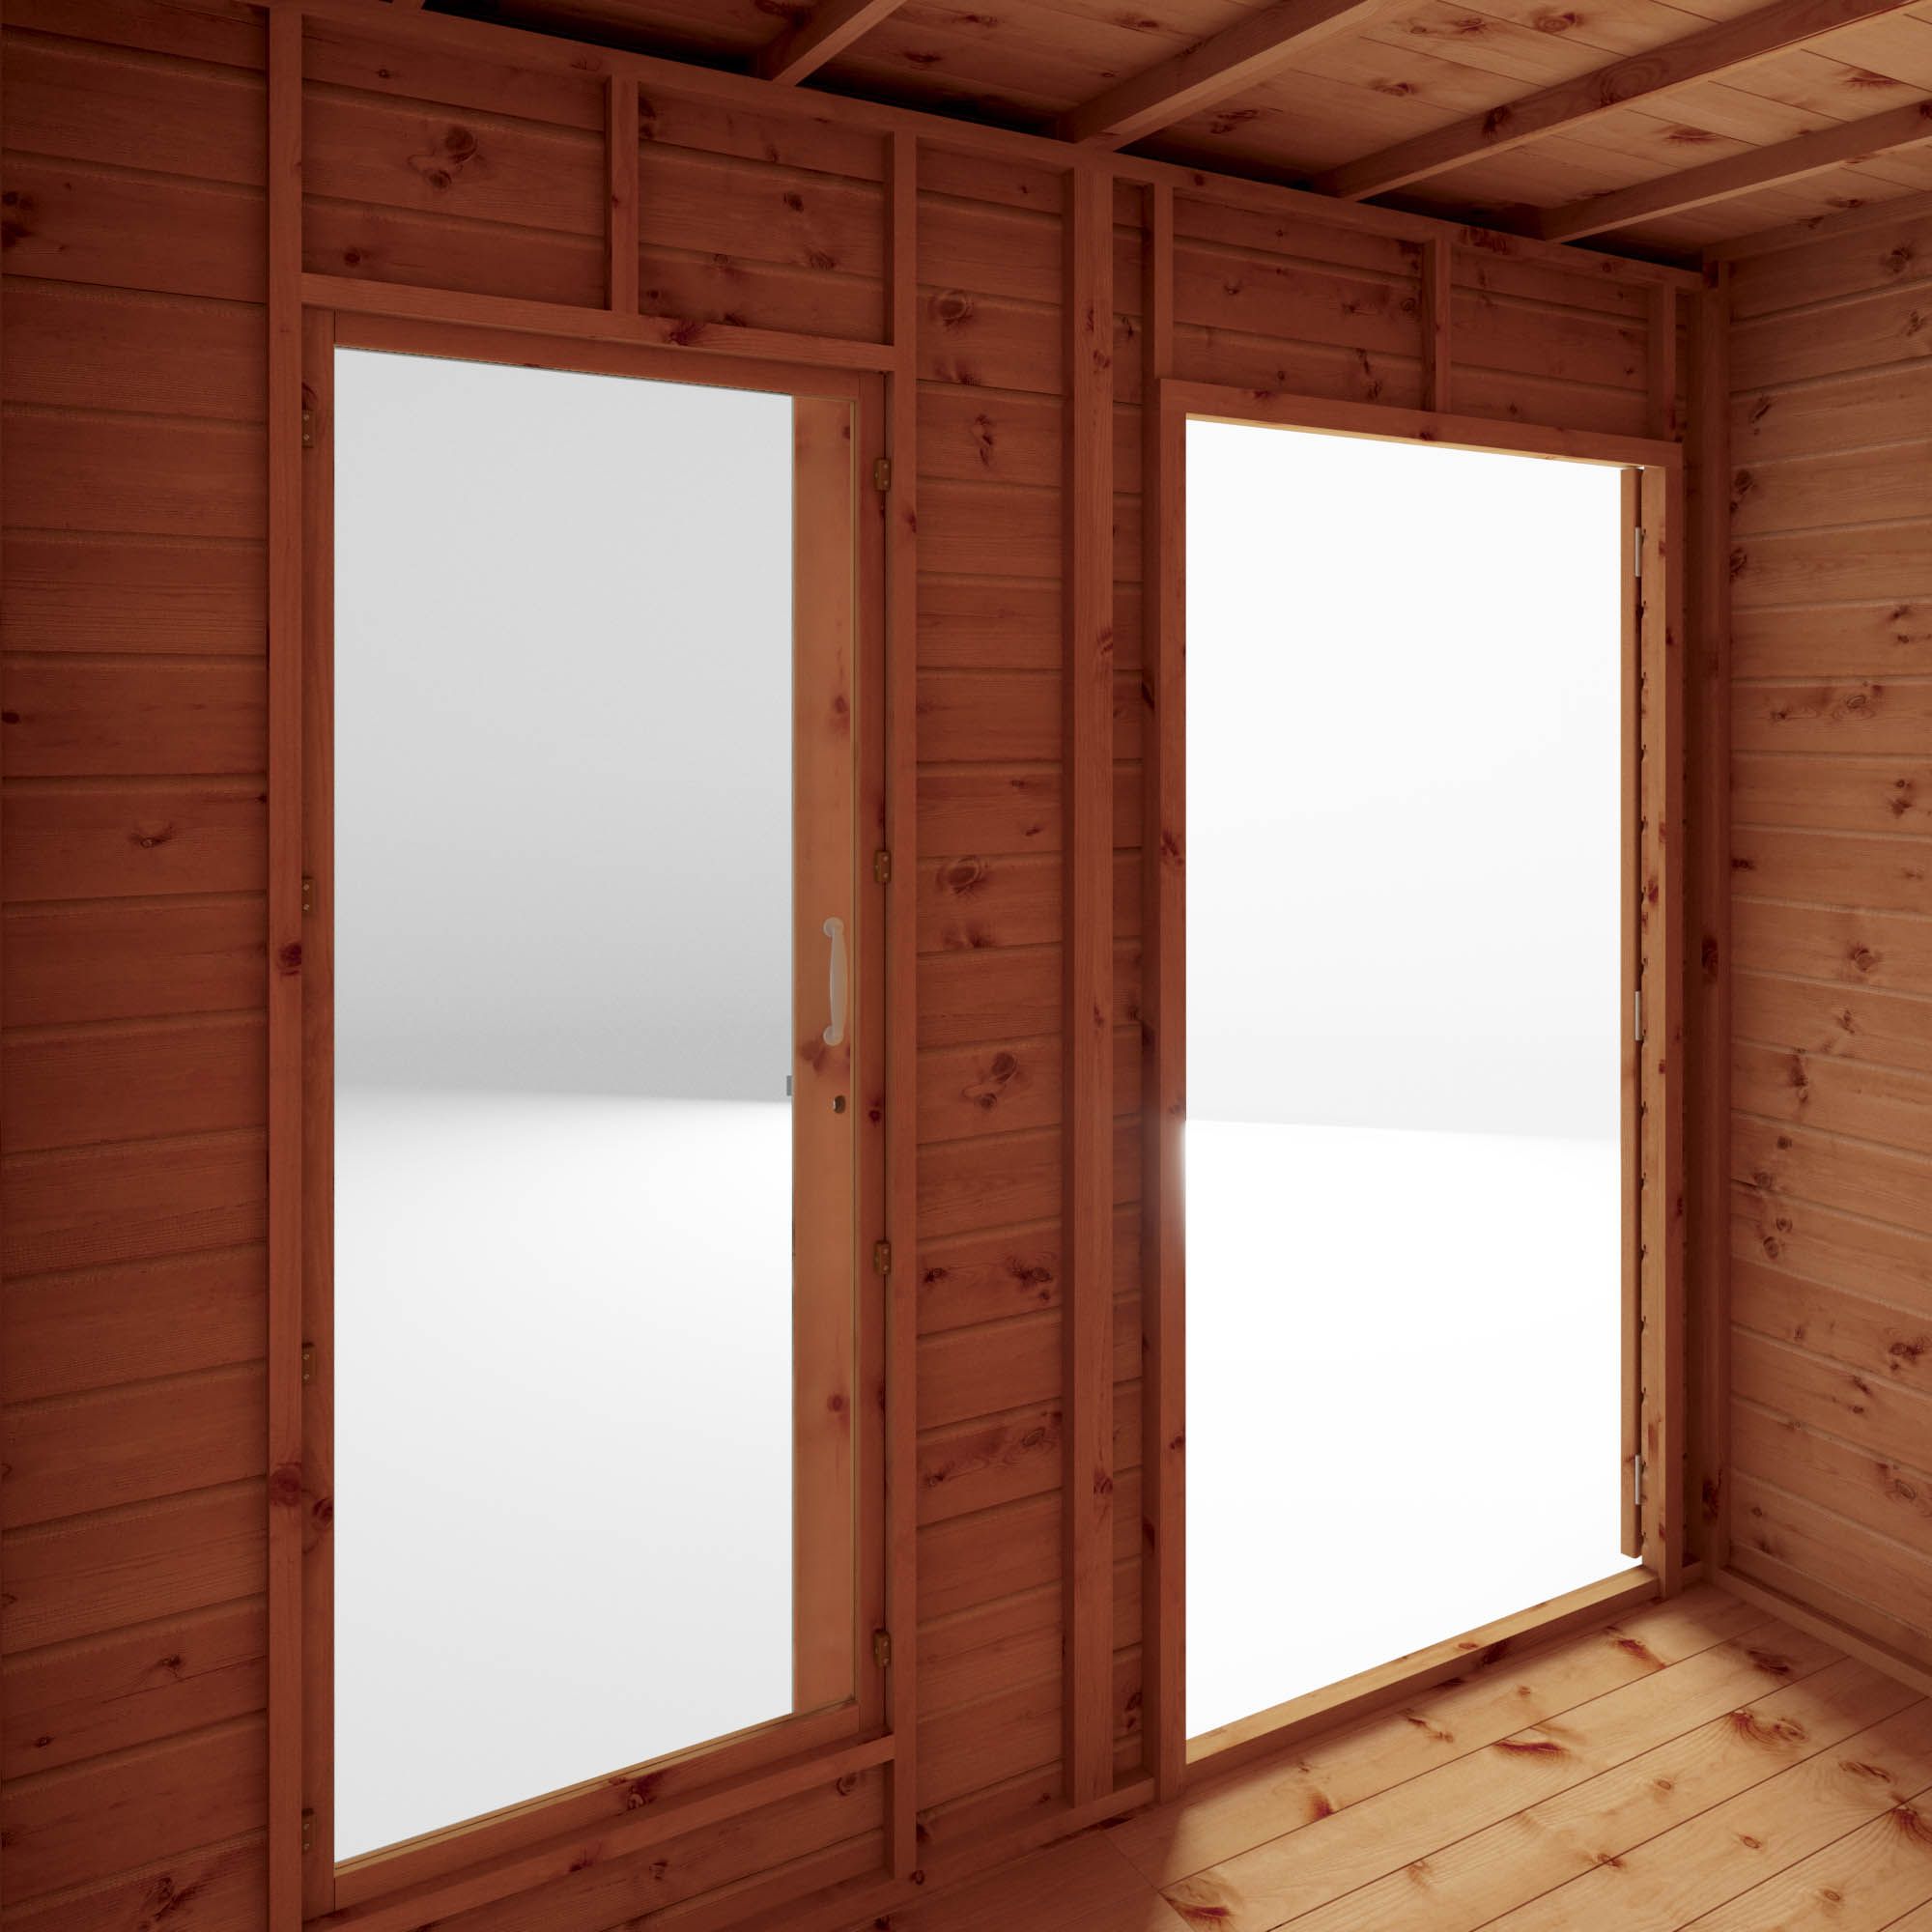 Mercia Maine 16x6 ft with Double door & 1 window Pent Wooden Summer house